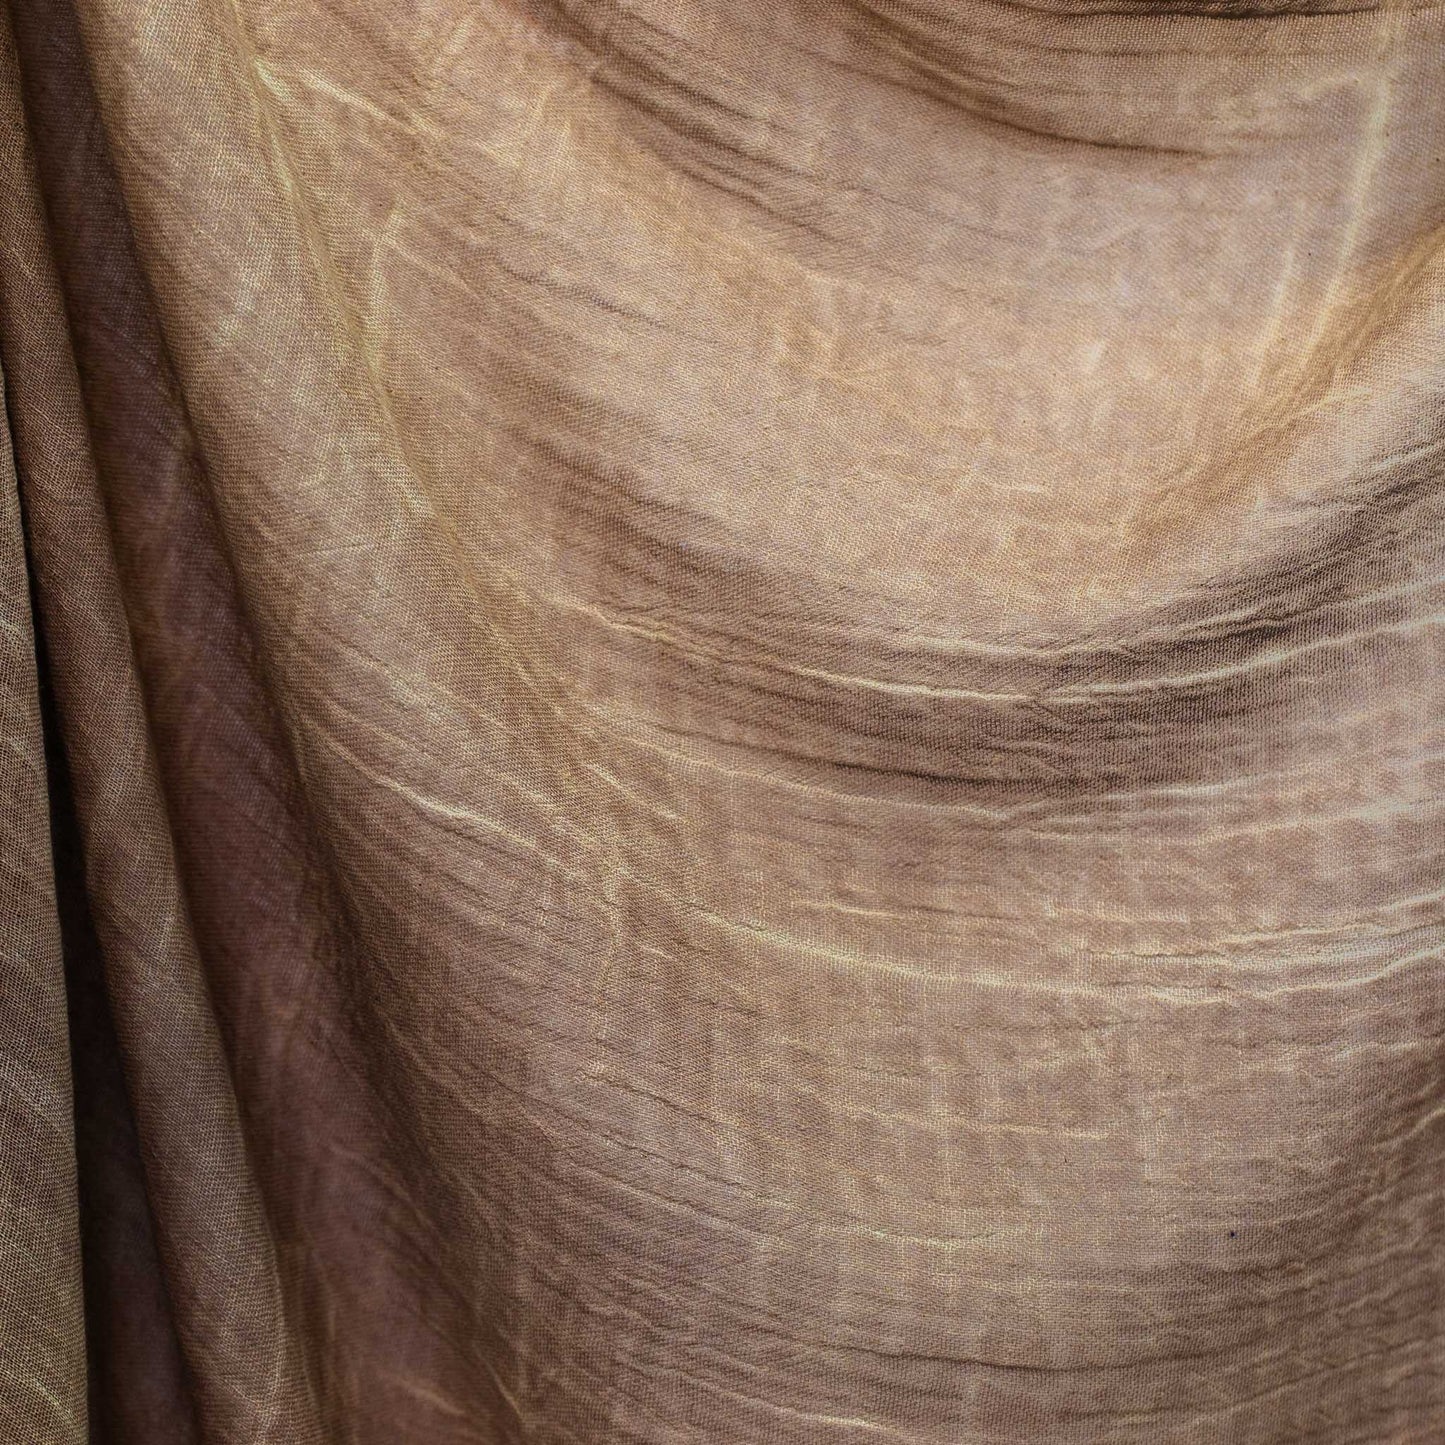 Eșarfă damă cu textură creponată și franjuri, 180 x 100 cm - Maro